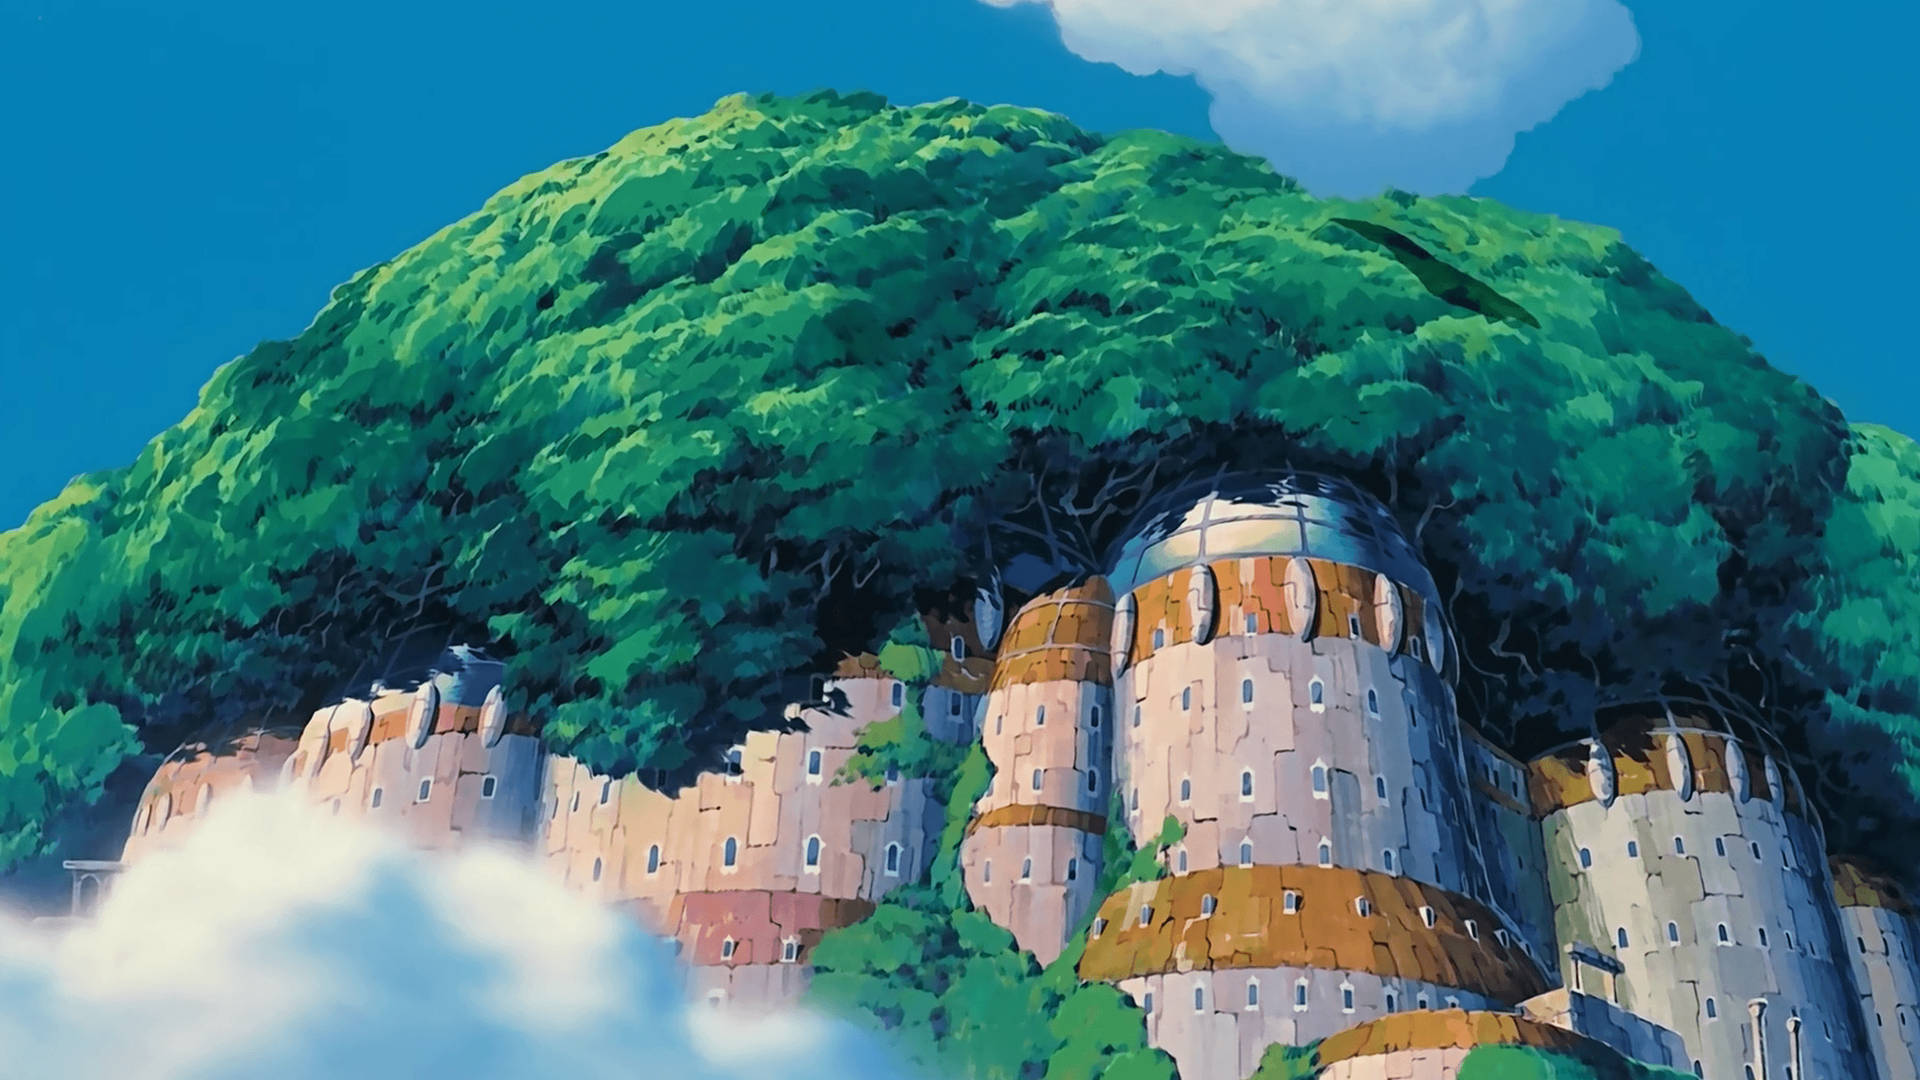 Ghibli Huge Building